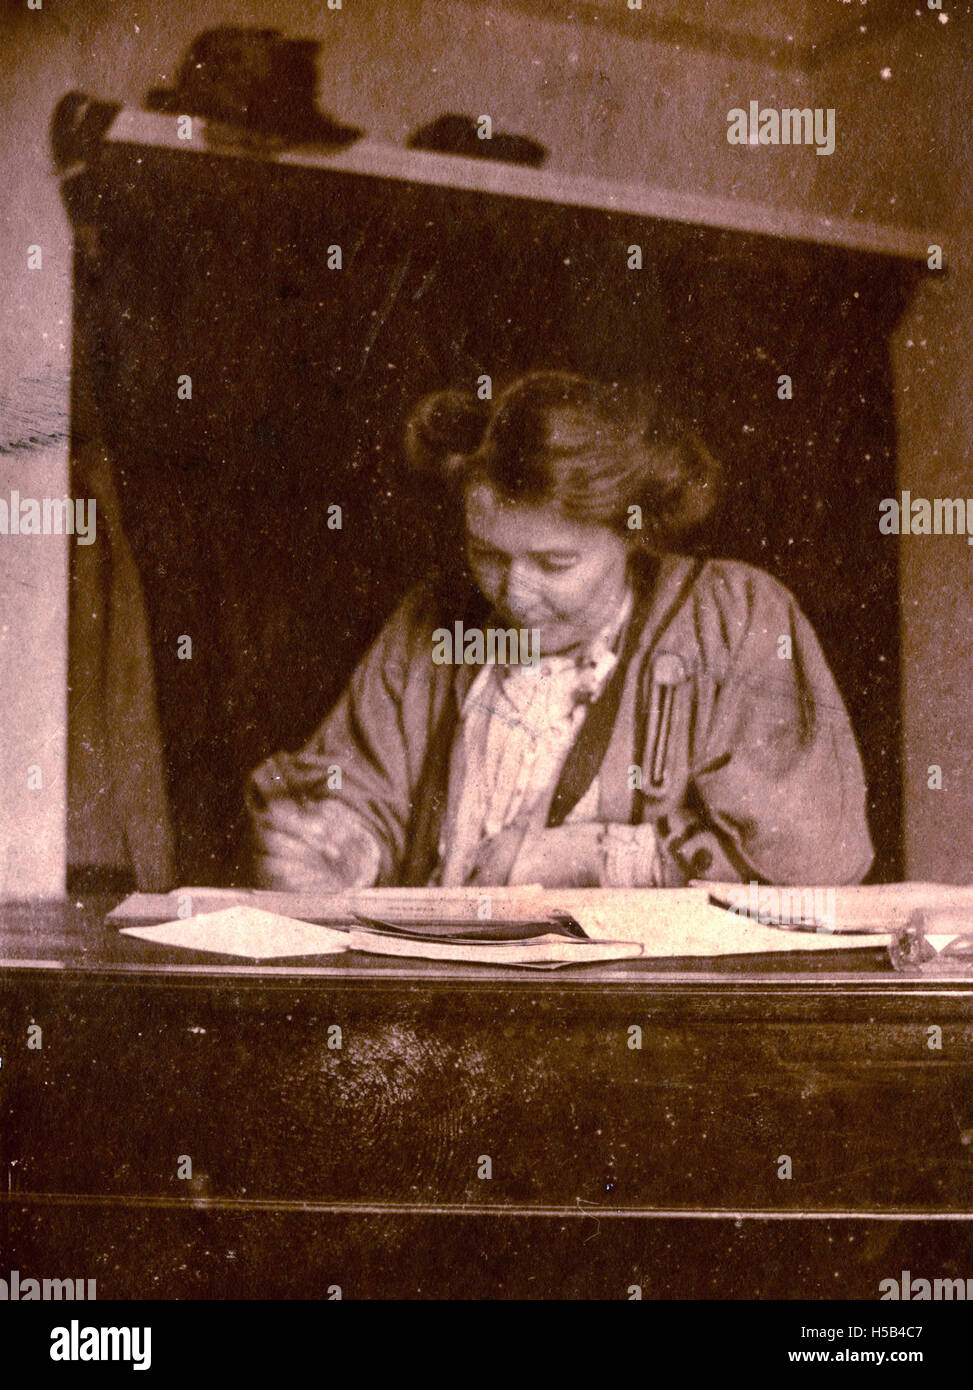 Emmeline Pethick Lawrence, c.1908. Stock Photo